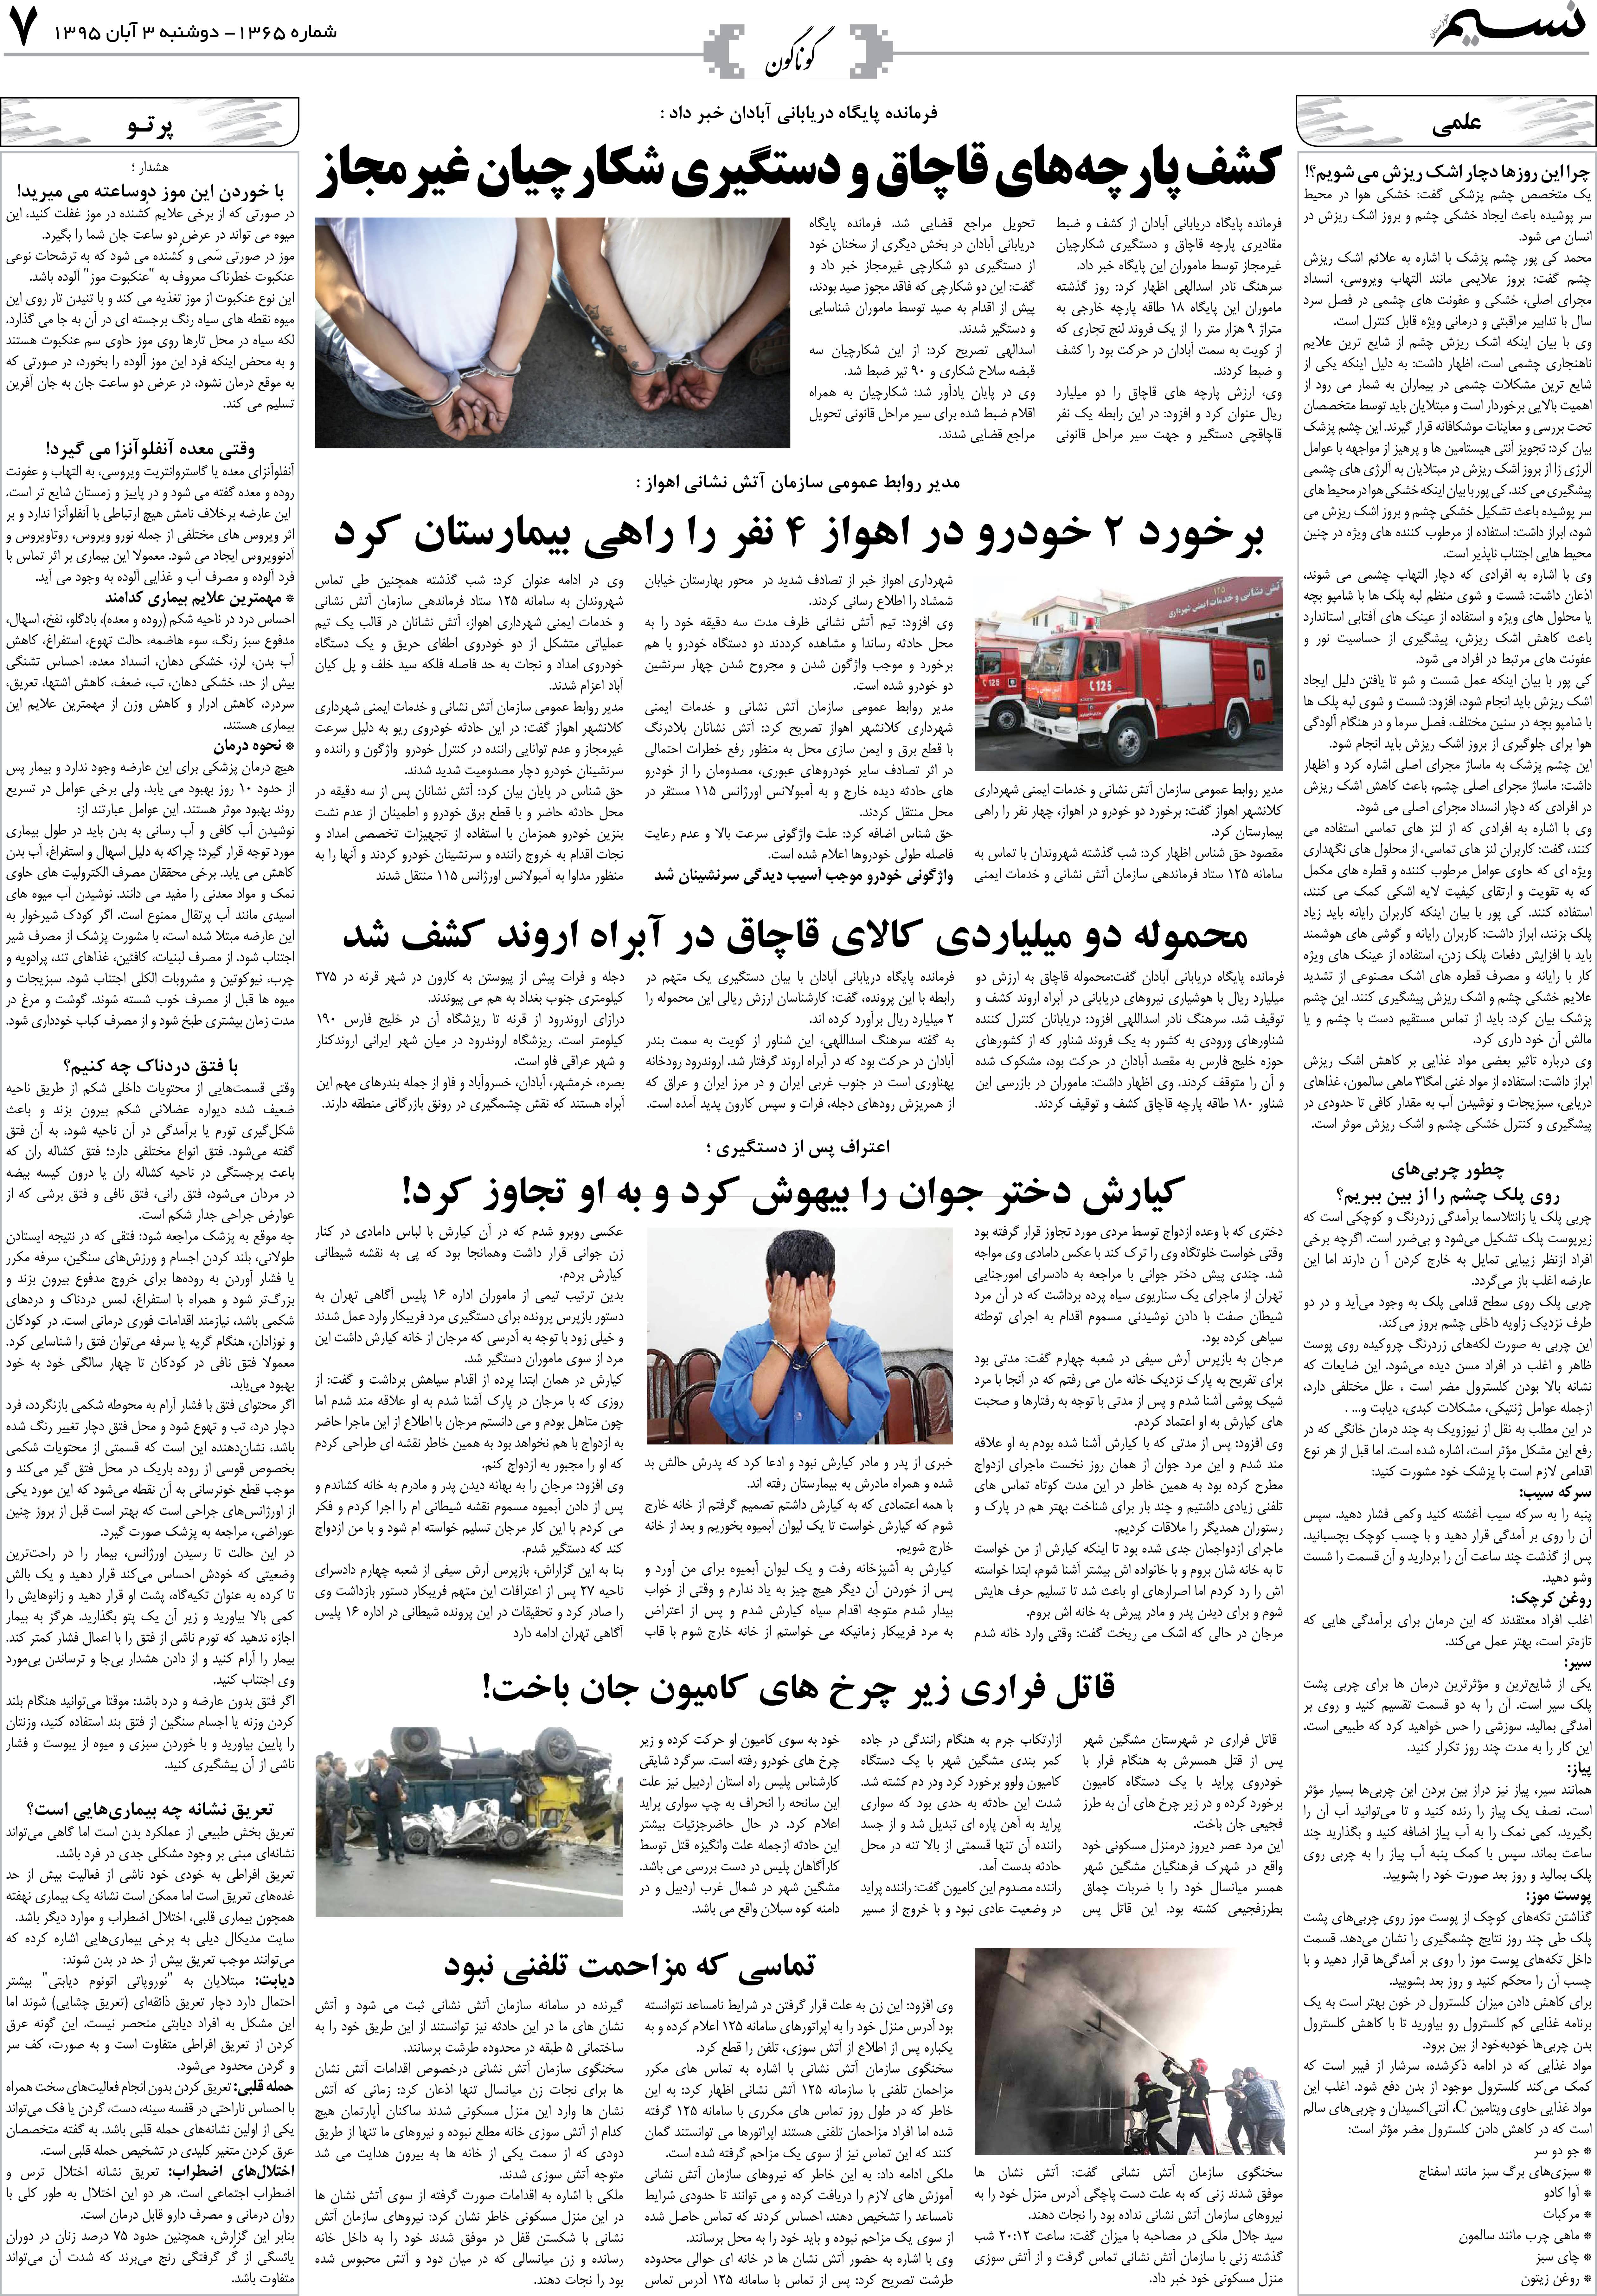 صفحه گوناگون روزنامه نسیم شماره 1365